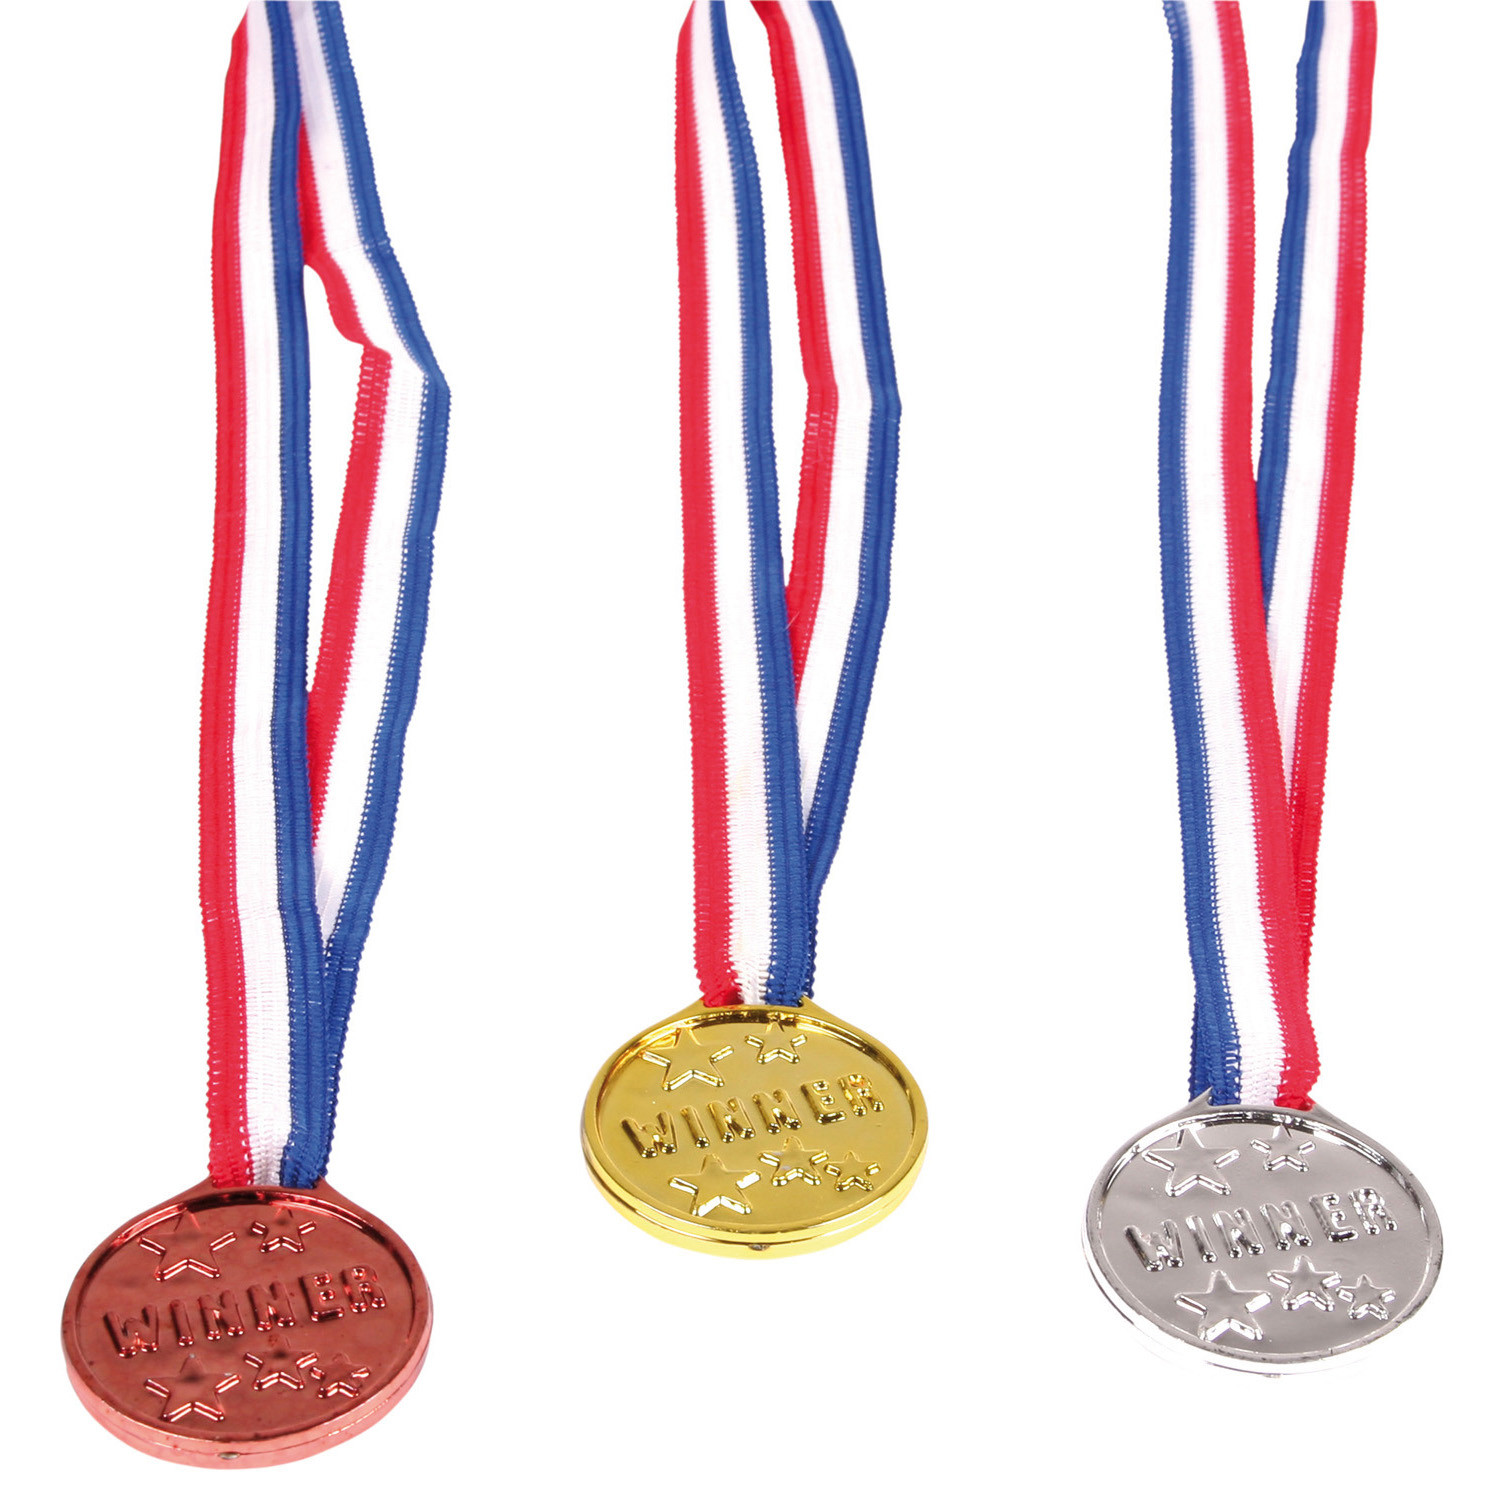 Zestaw medali z napisem "Winner"